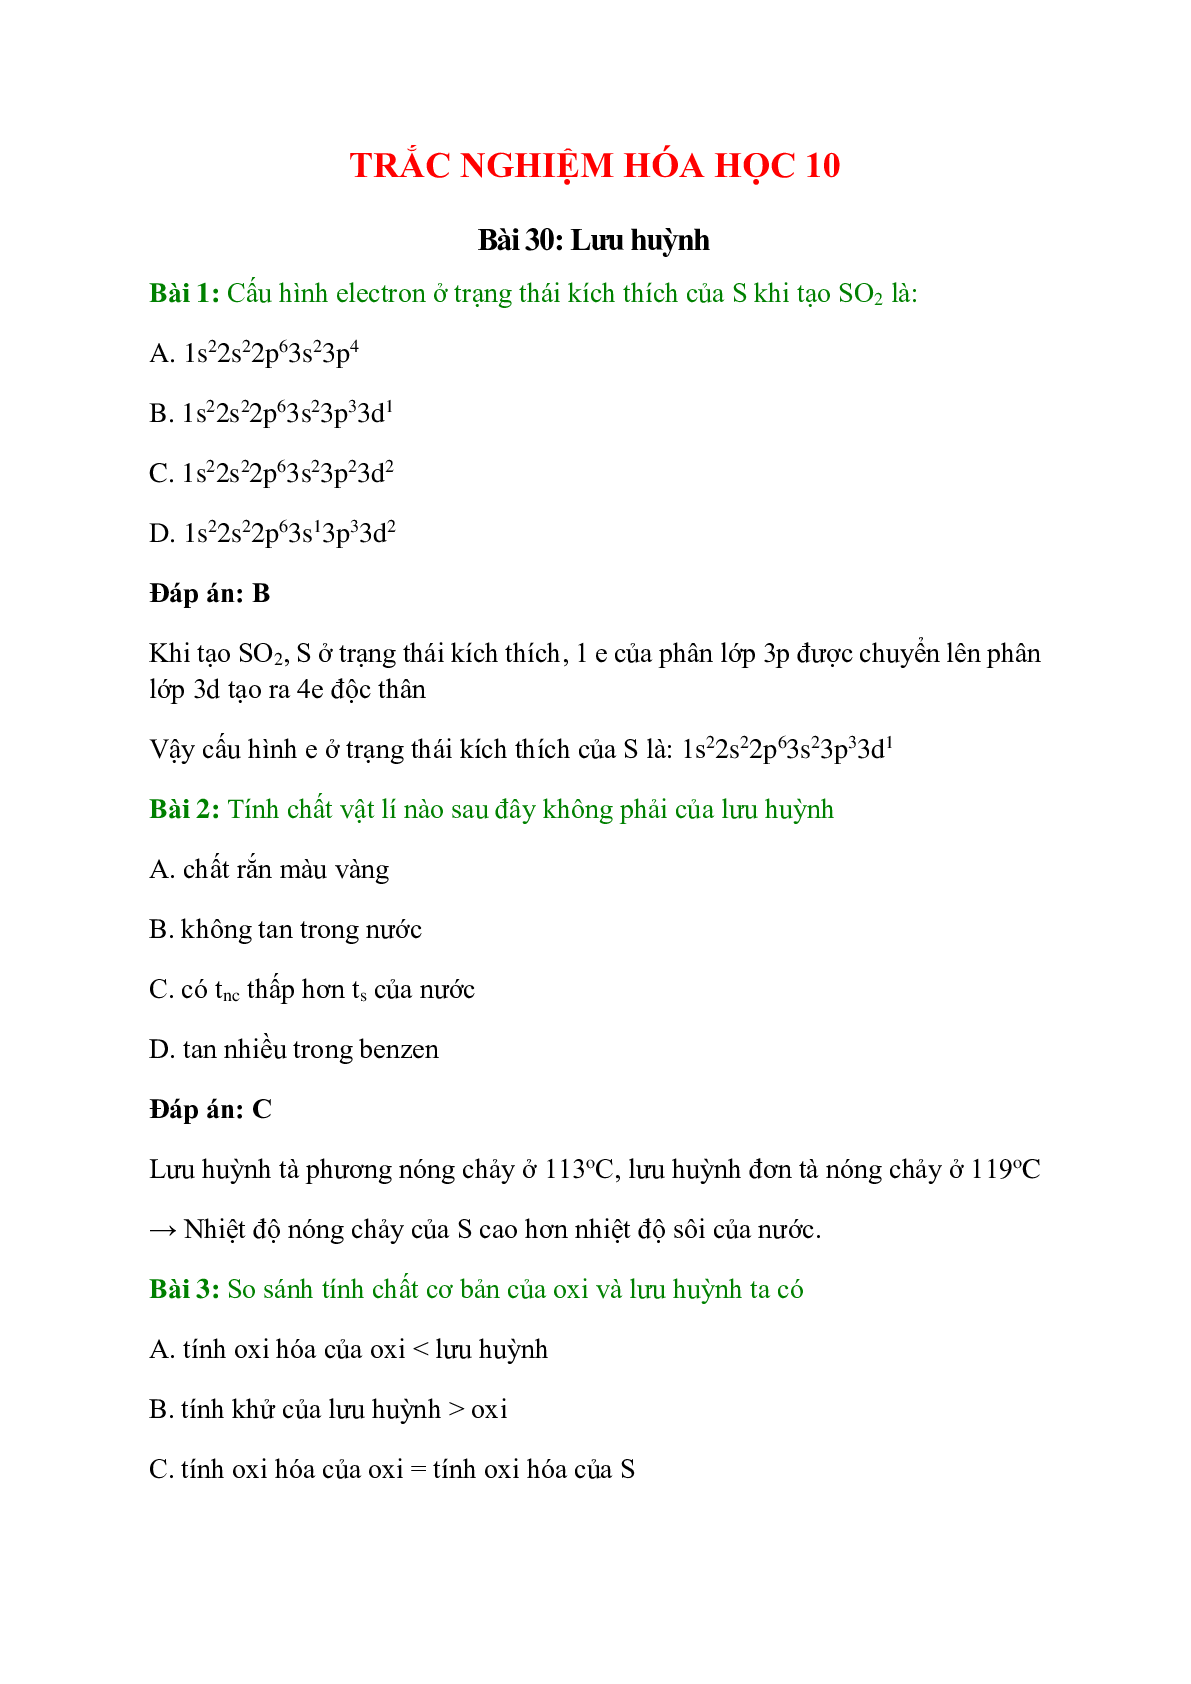 Trắc nghiệm Lưu huỳnh có đáp án - Hóa học 10 (trang 1)